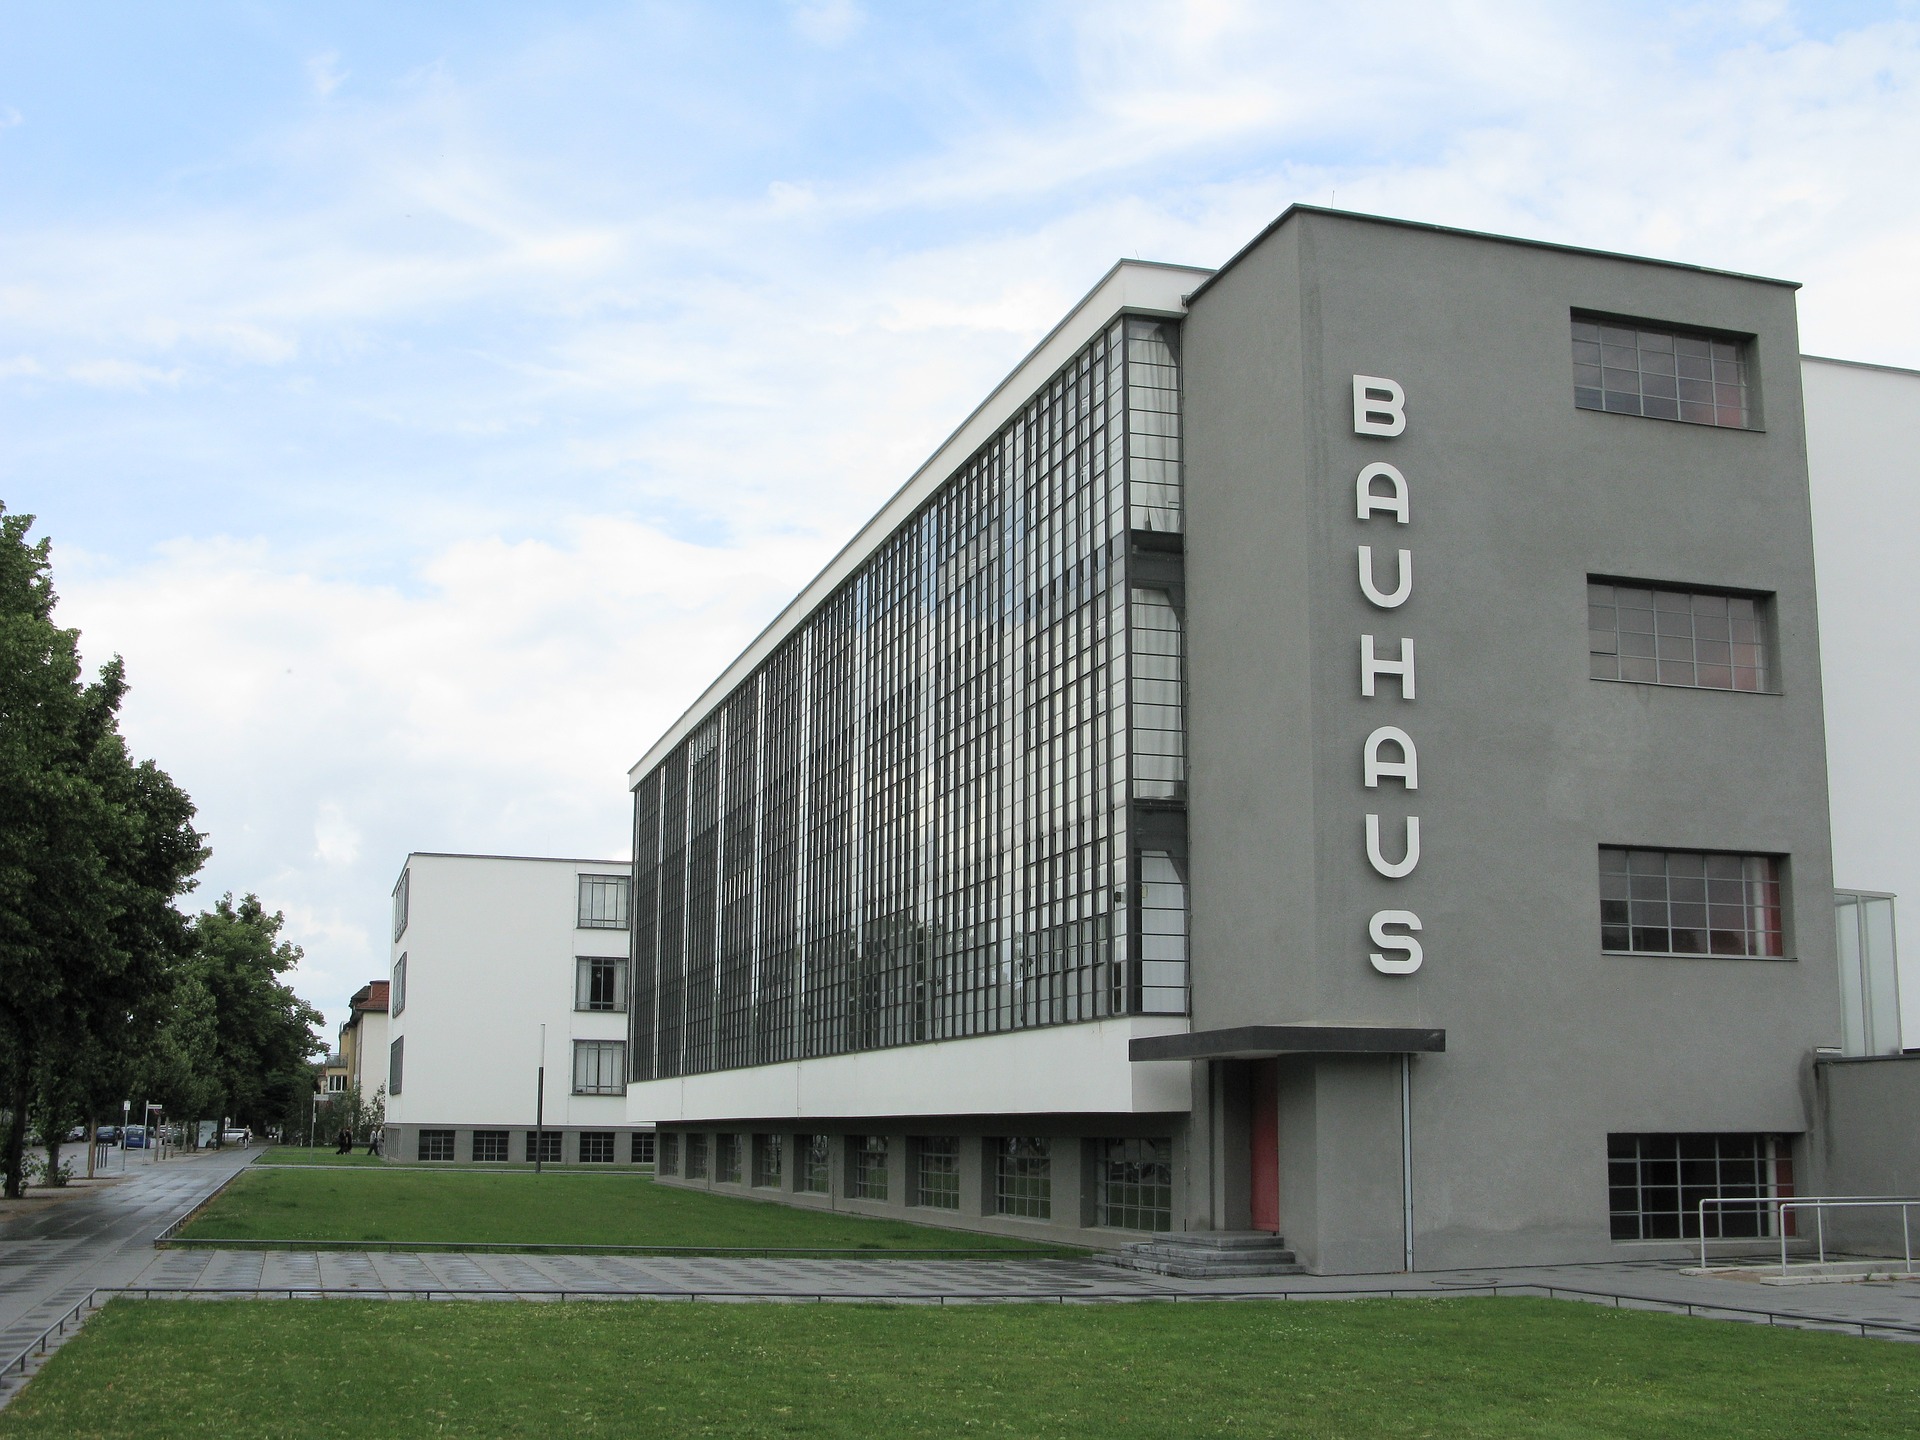 Lighting at Bauhaus
